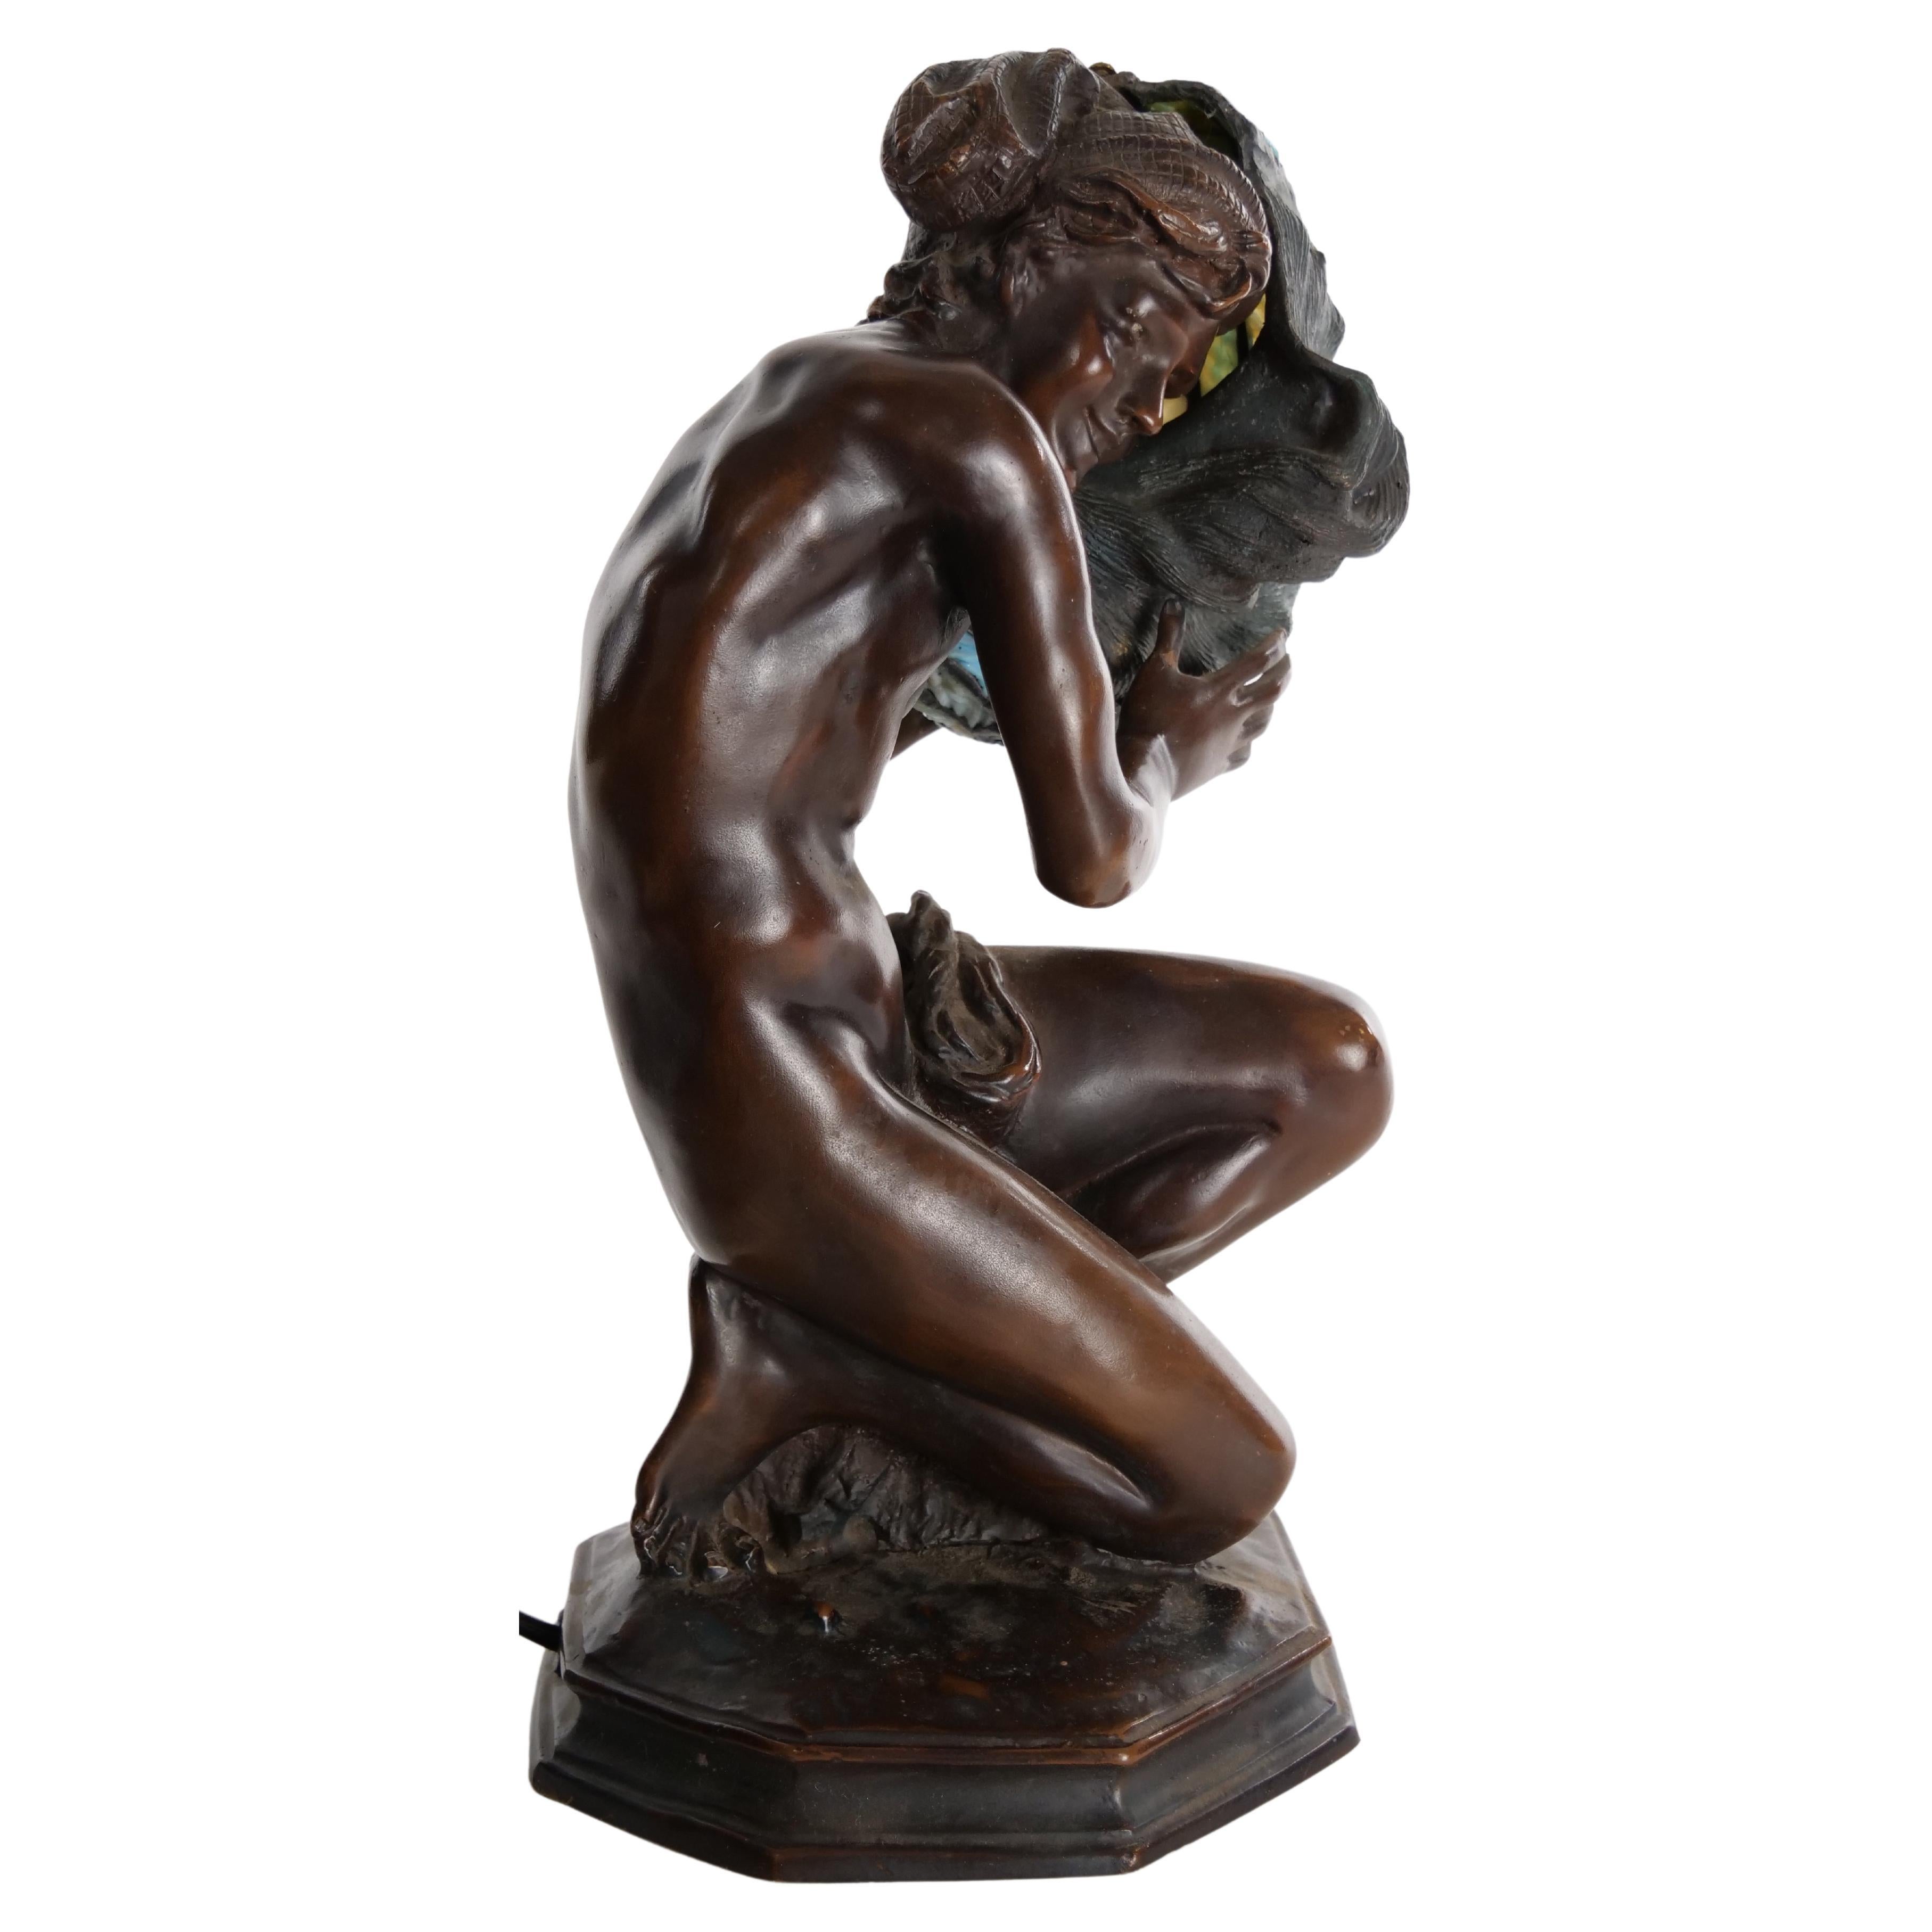 Lampe de table figurée en bronze de la fin du 19e siècle, représentant une femme agenouillée tenant un abat-jour en verre plombé en forme de coquille. La lampe est en bon état de fonctionnement. Usure mineure correspondant à l'âge / à l'utilisation.